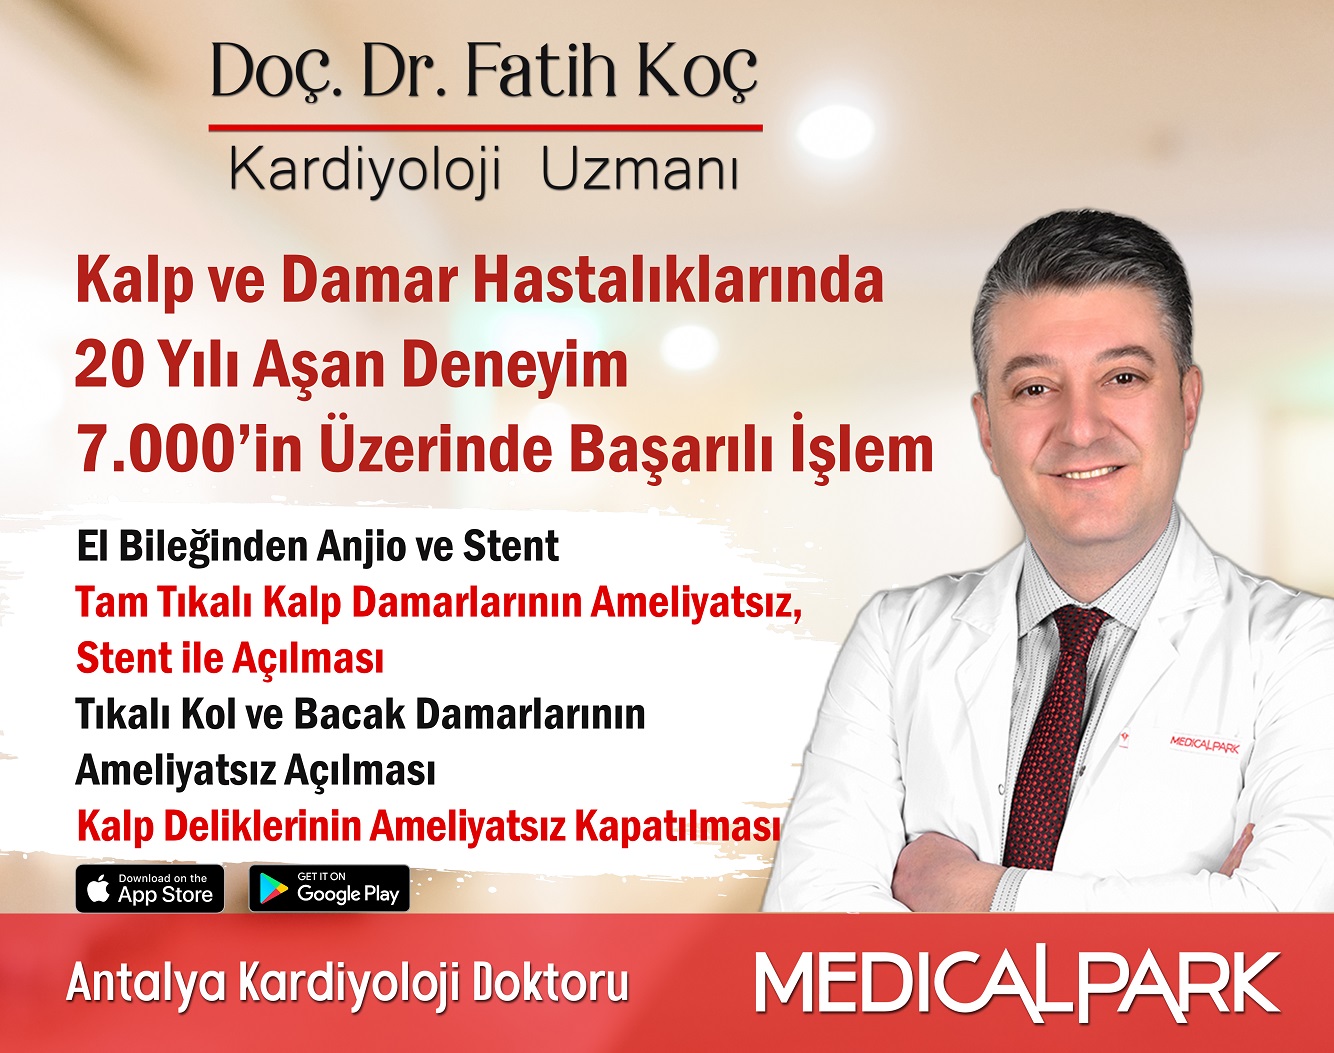 Hasta Yorumları - Doç. Dr. Fatih Koç Antalya Kalp Doktoru - Randevu ve İletişim Bilgileri